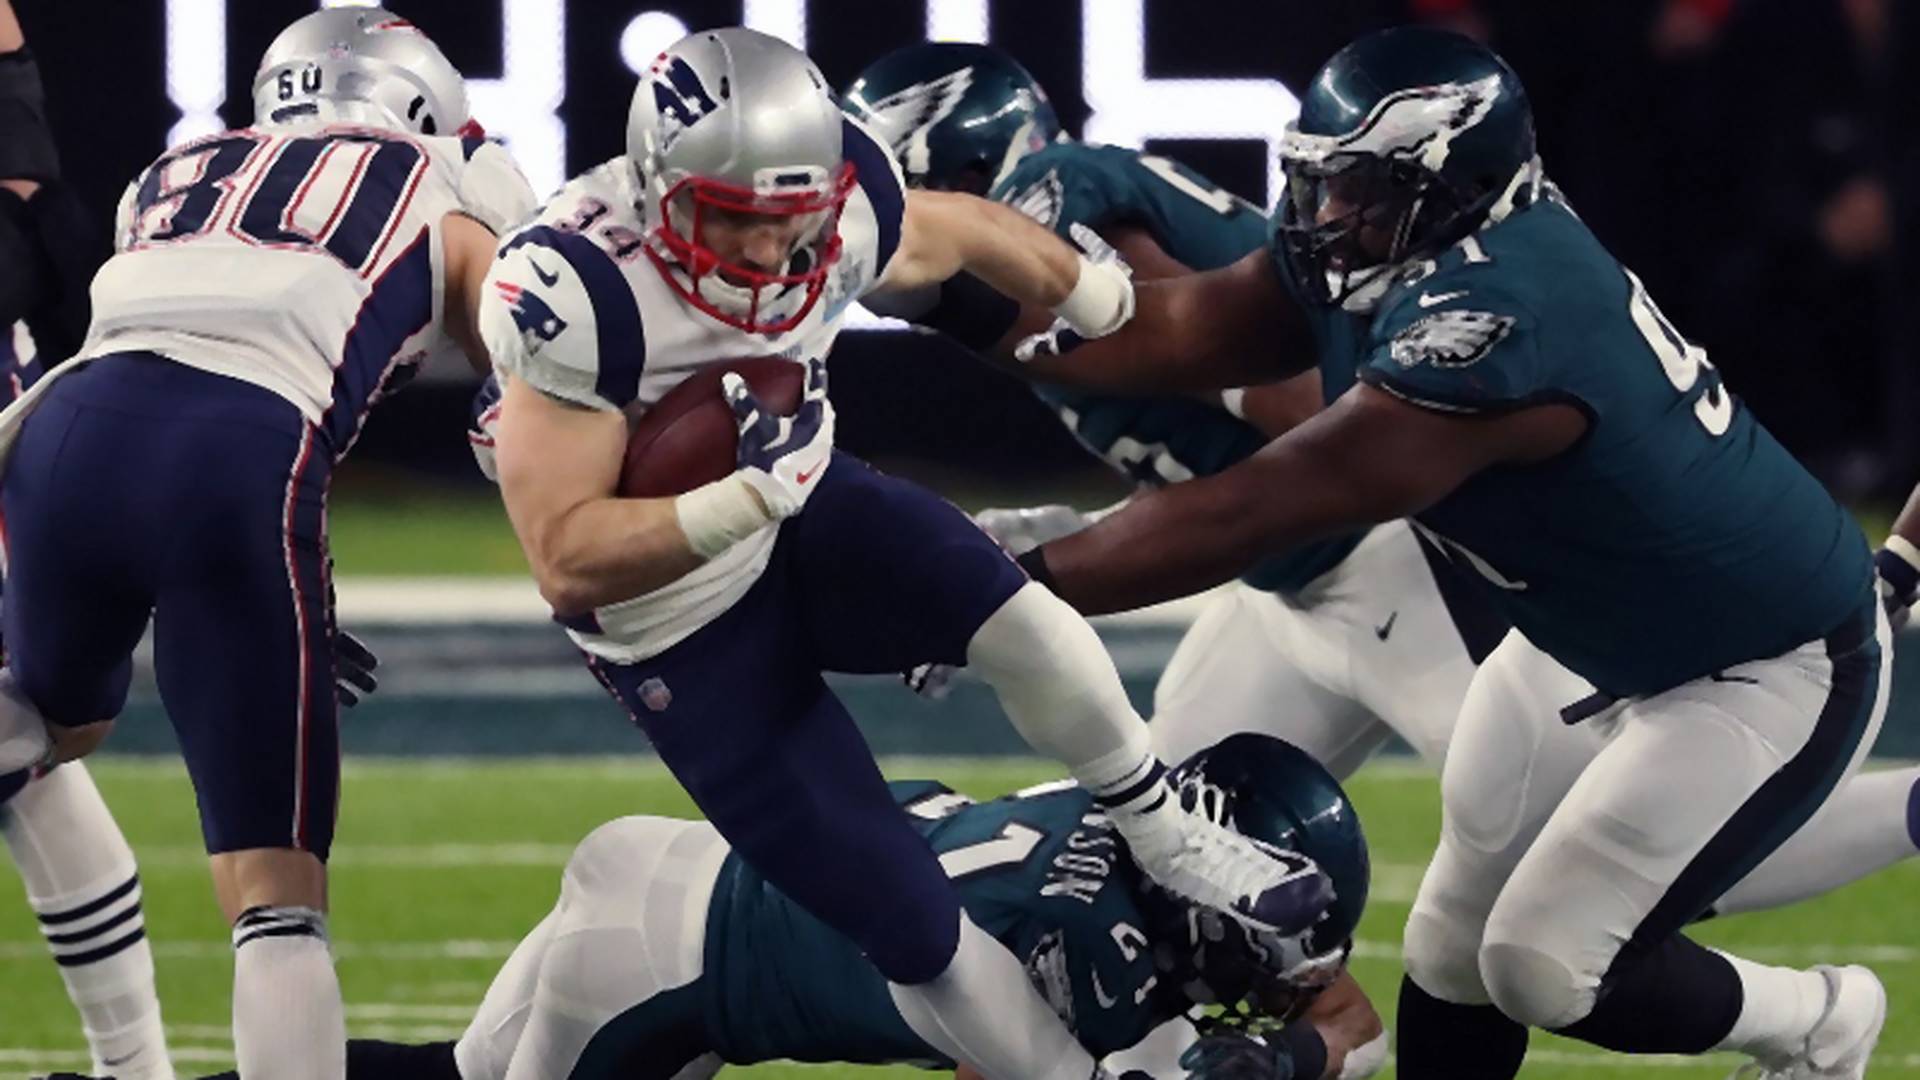 Rams vs. Patriots: vajon ki lesz az idei Super Bowl győztese? - A szakértő válaszol!